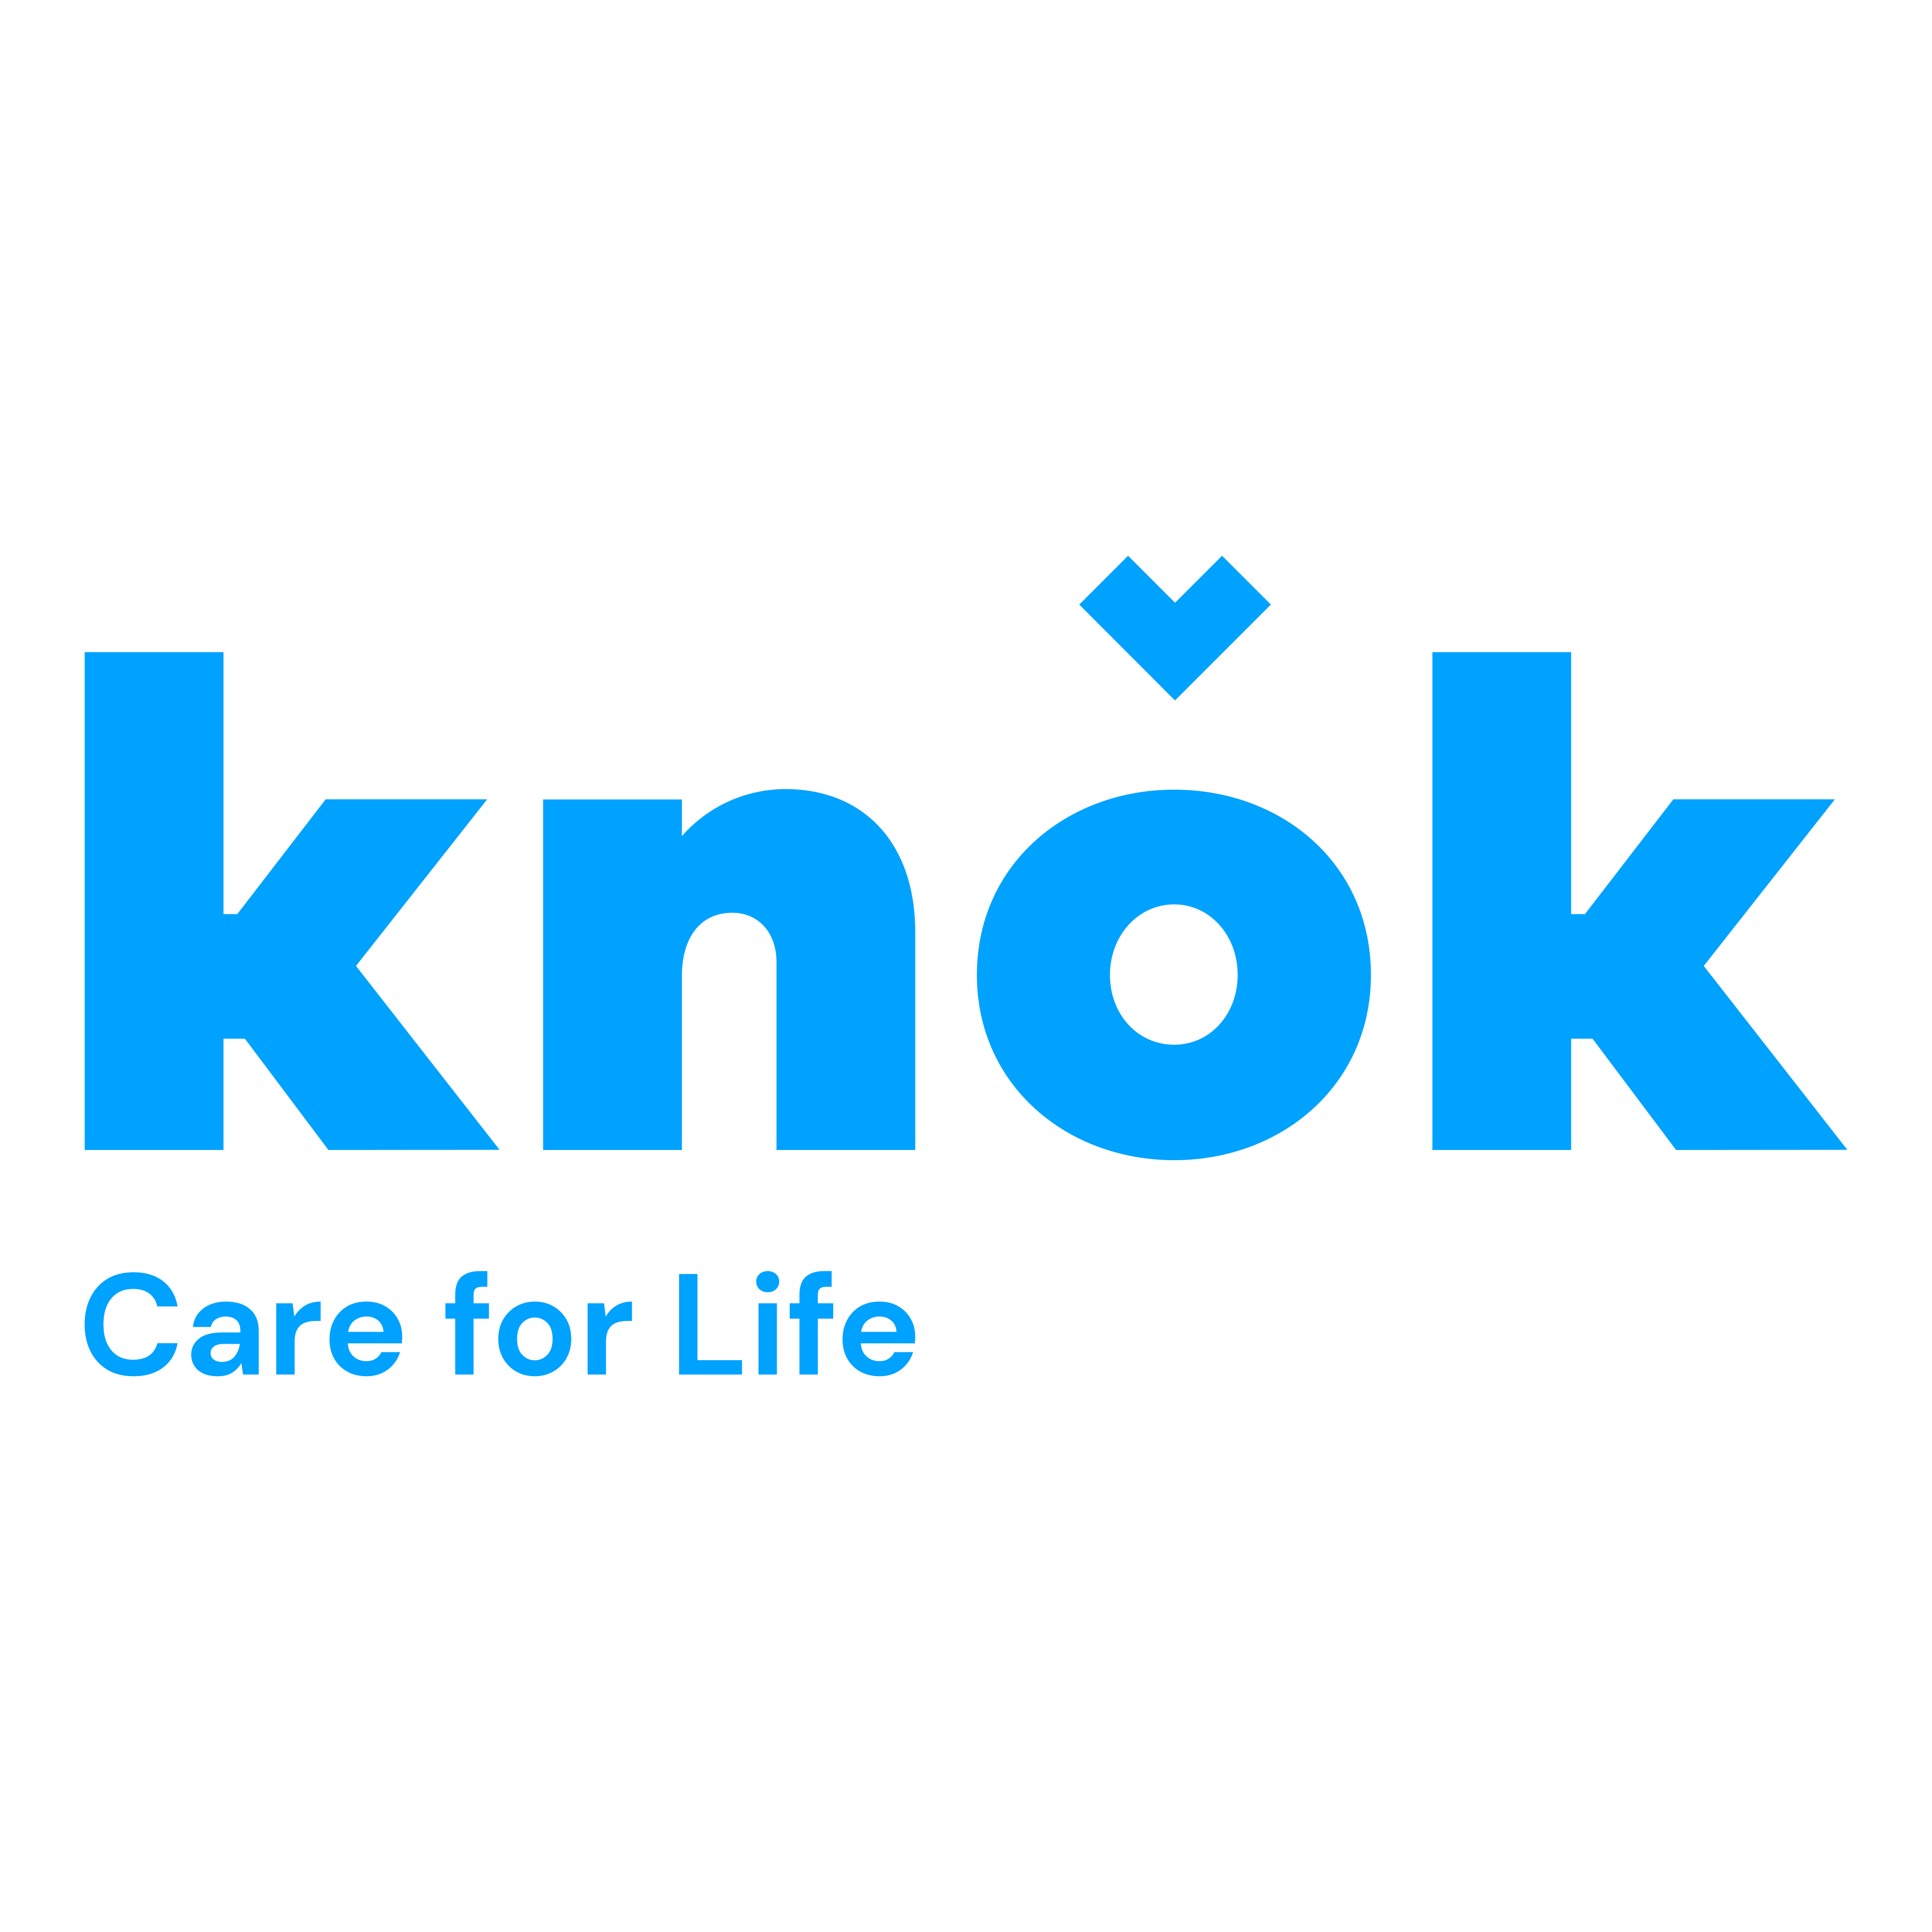 Knok Logo